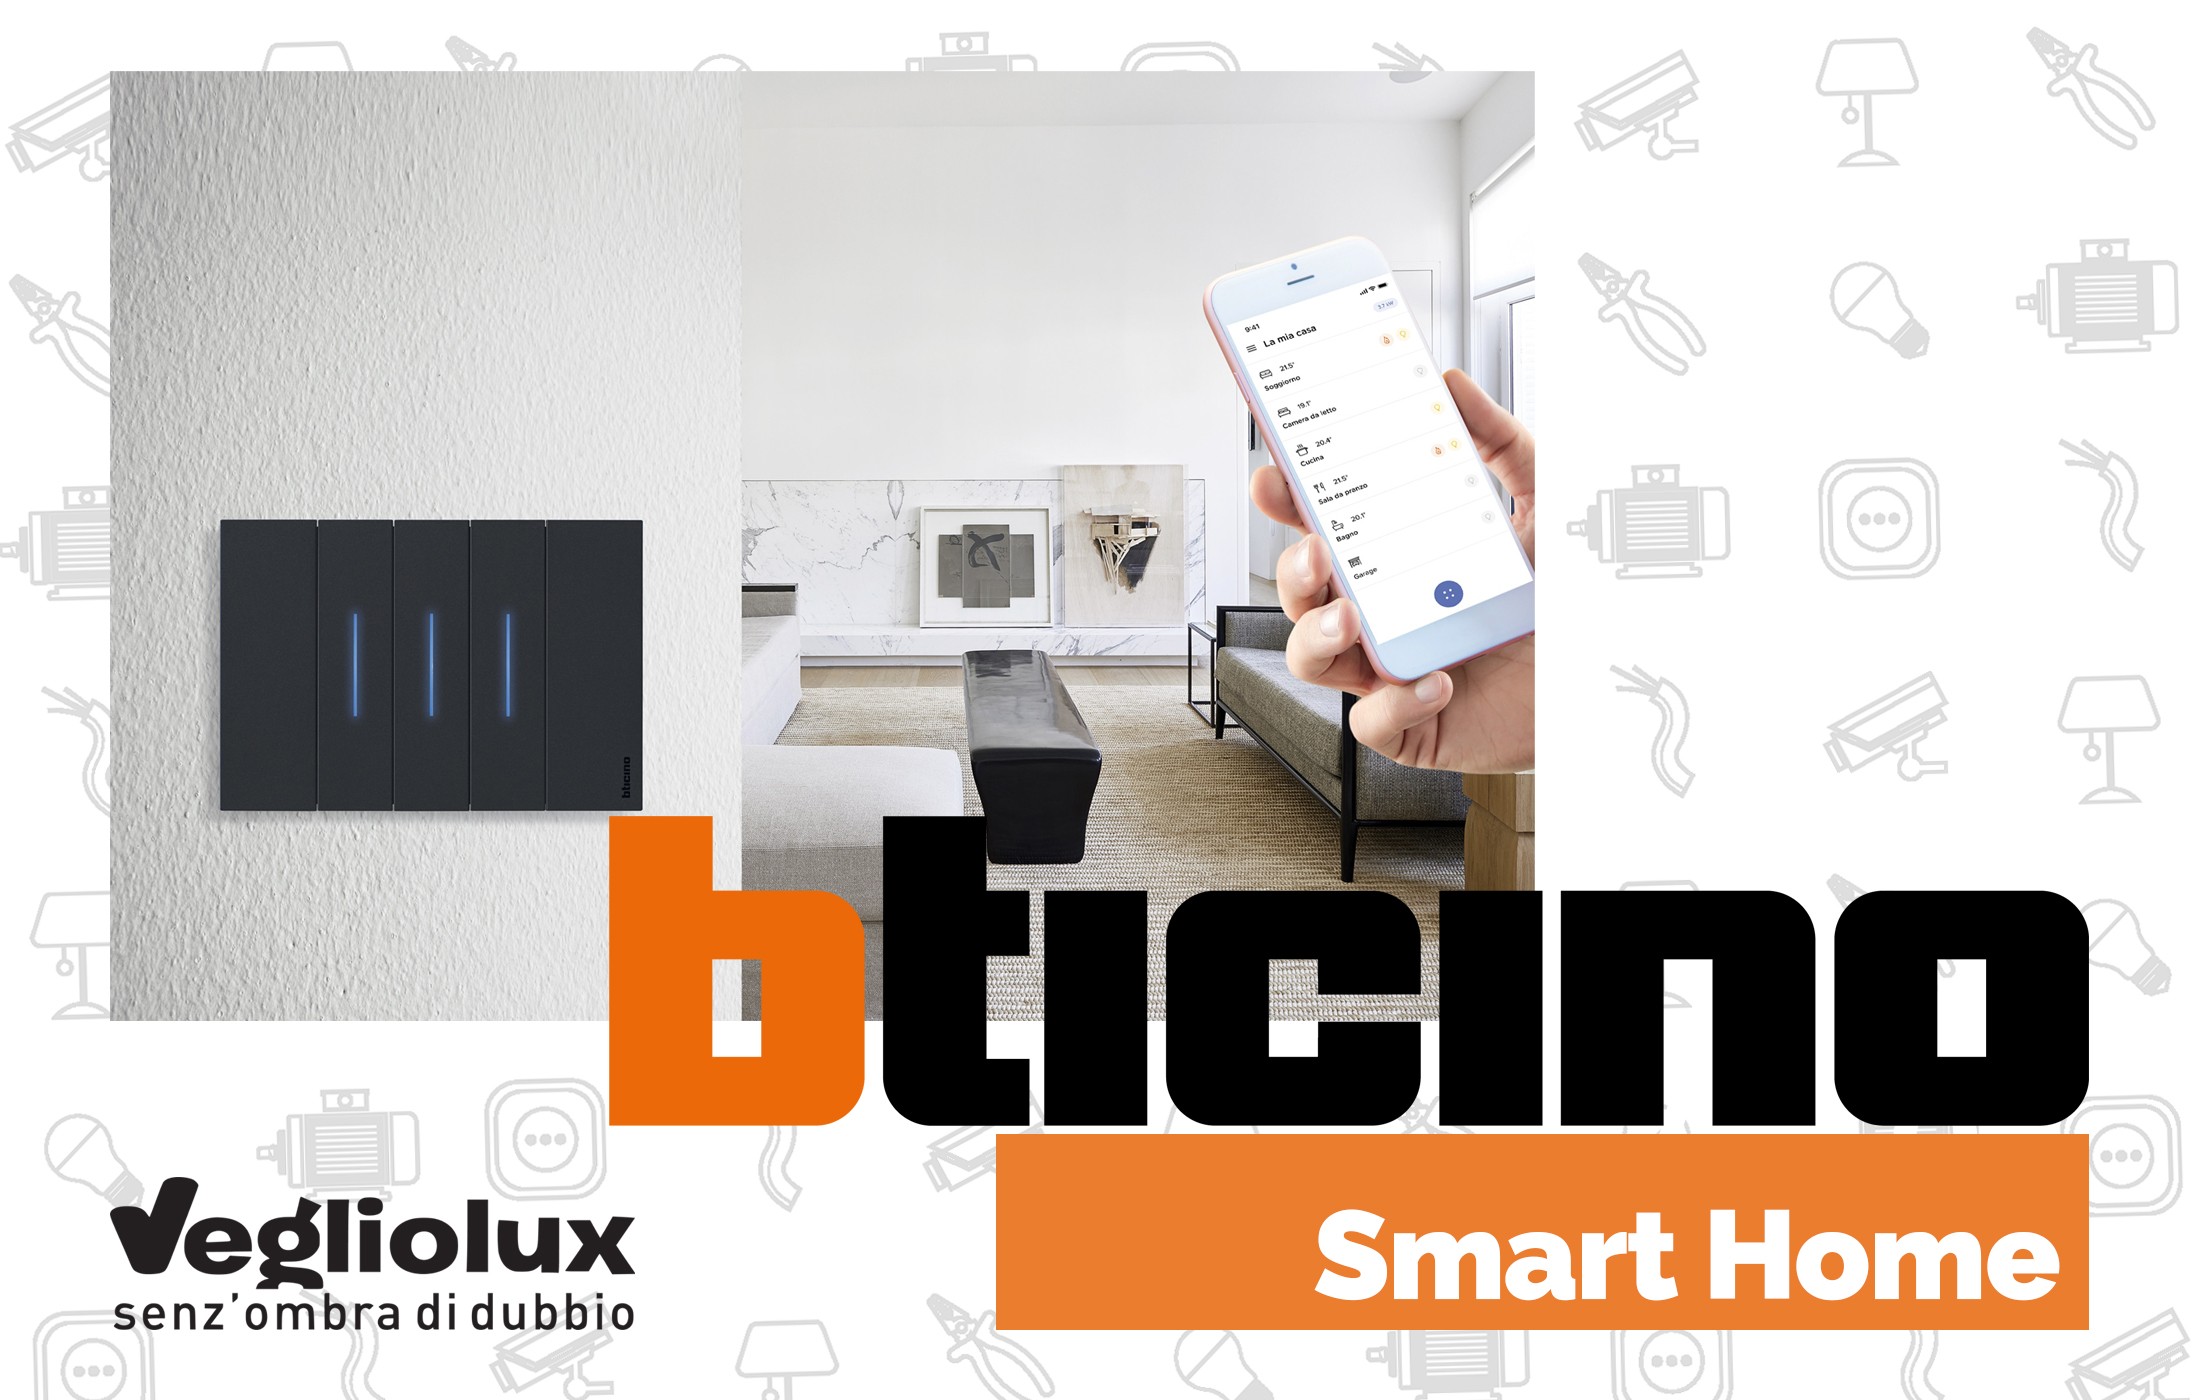 BTicino Smart Home: da Vegliolux si può acquistare la tecnologia domotica e smart home bticino